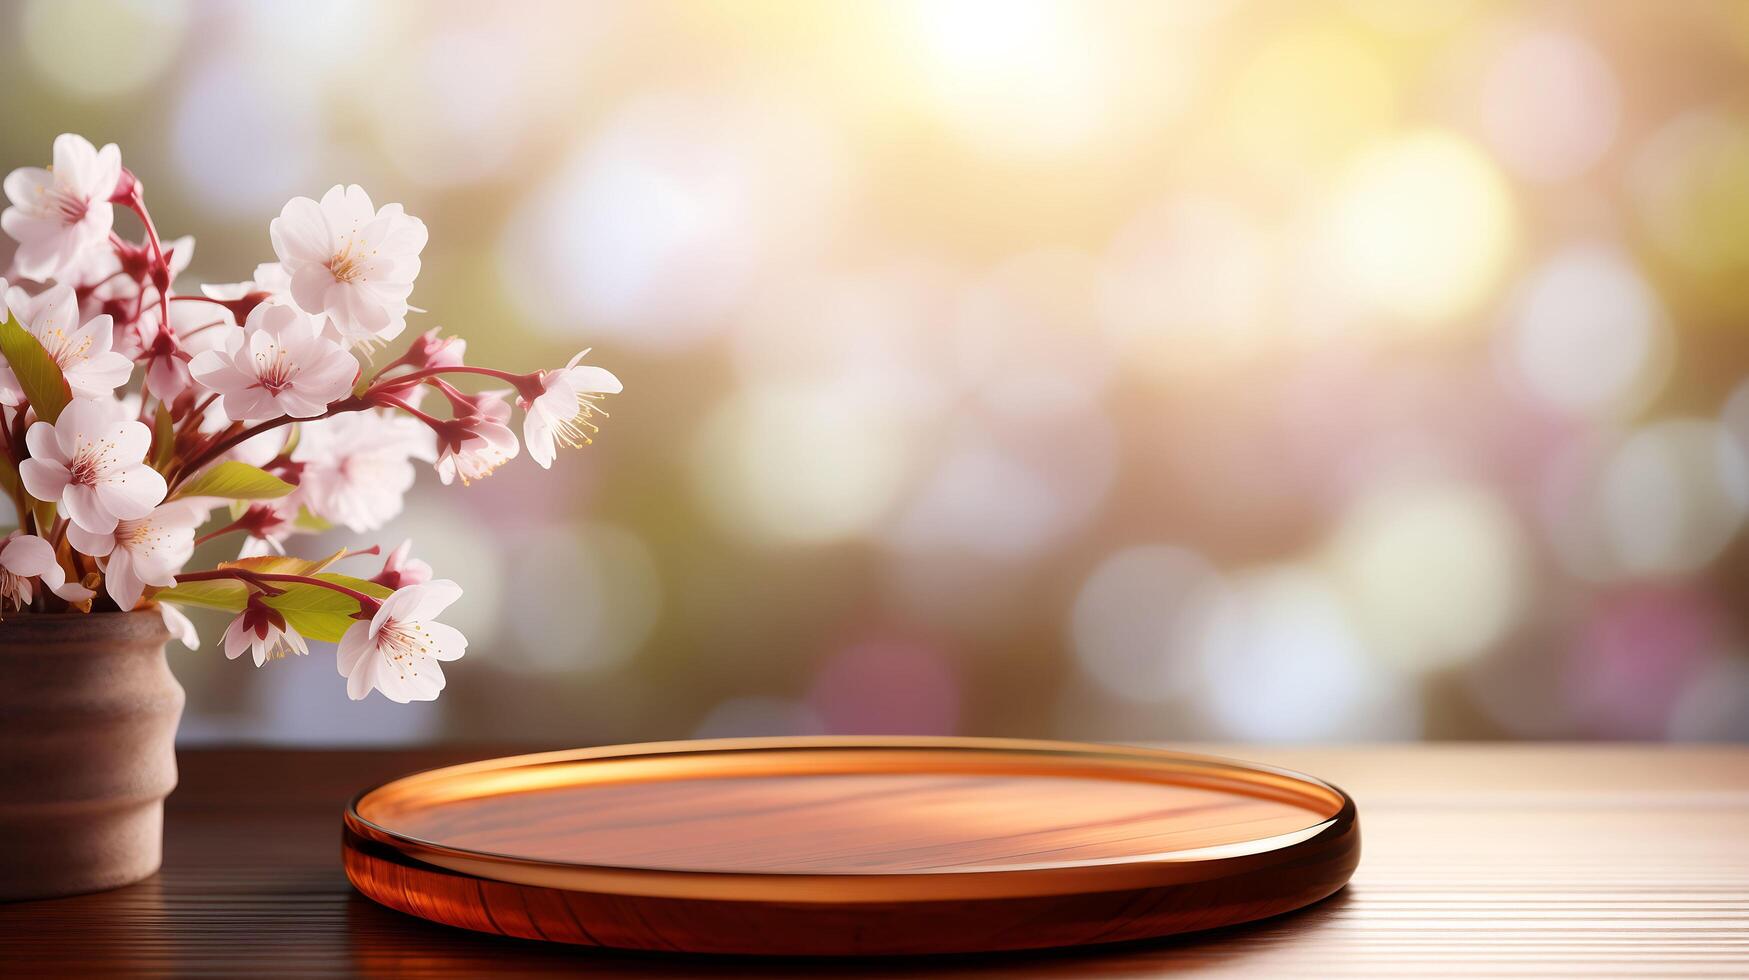 de madeira de mesa mostrar, Primavera flores pano de fundo para produtos mostruário foto